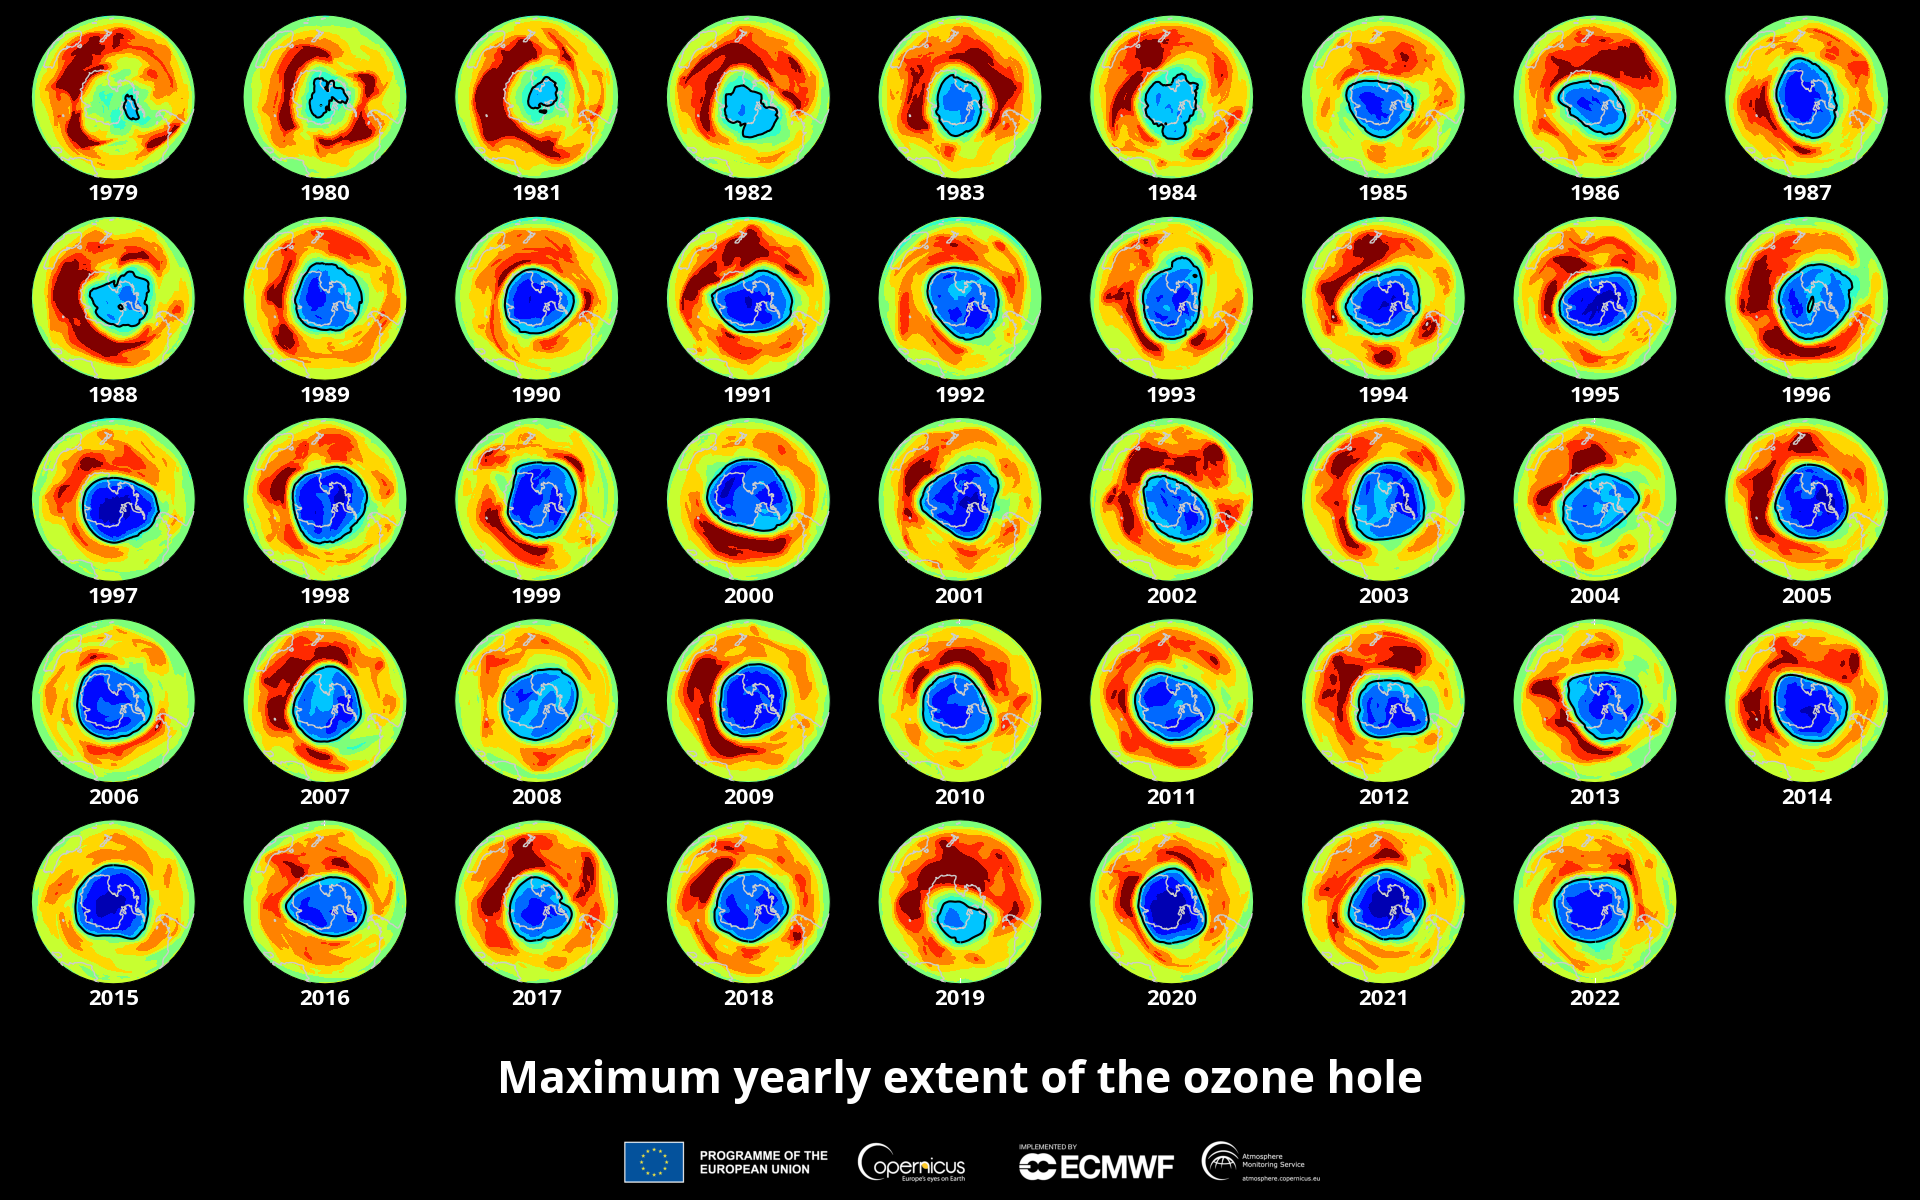 Estensione del buco nell'ozono dal 1979 al 2022